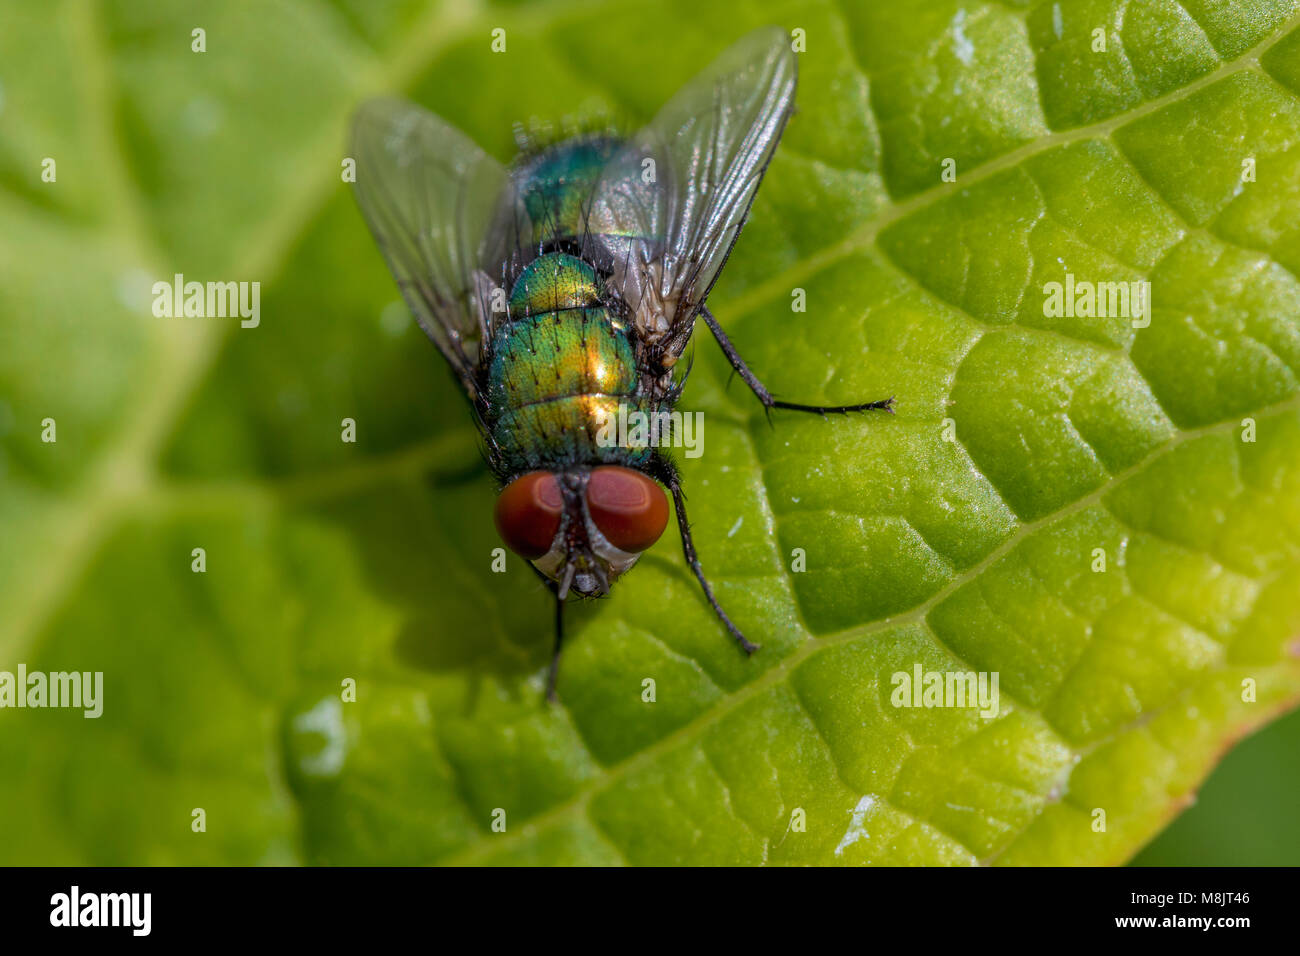 Volle, detaillierte Nahaufnahmen der sonnendurchfluteten grünen Flasche fliegen ruht auf Blatt geradeaus schauen mit großen roten Augen Stockfoto